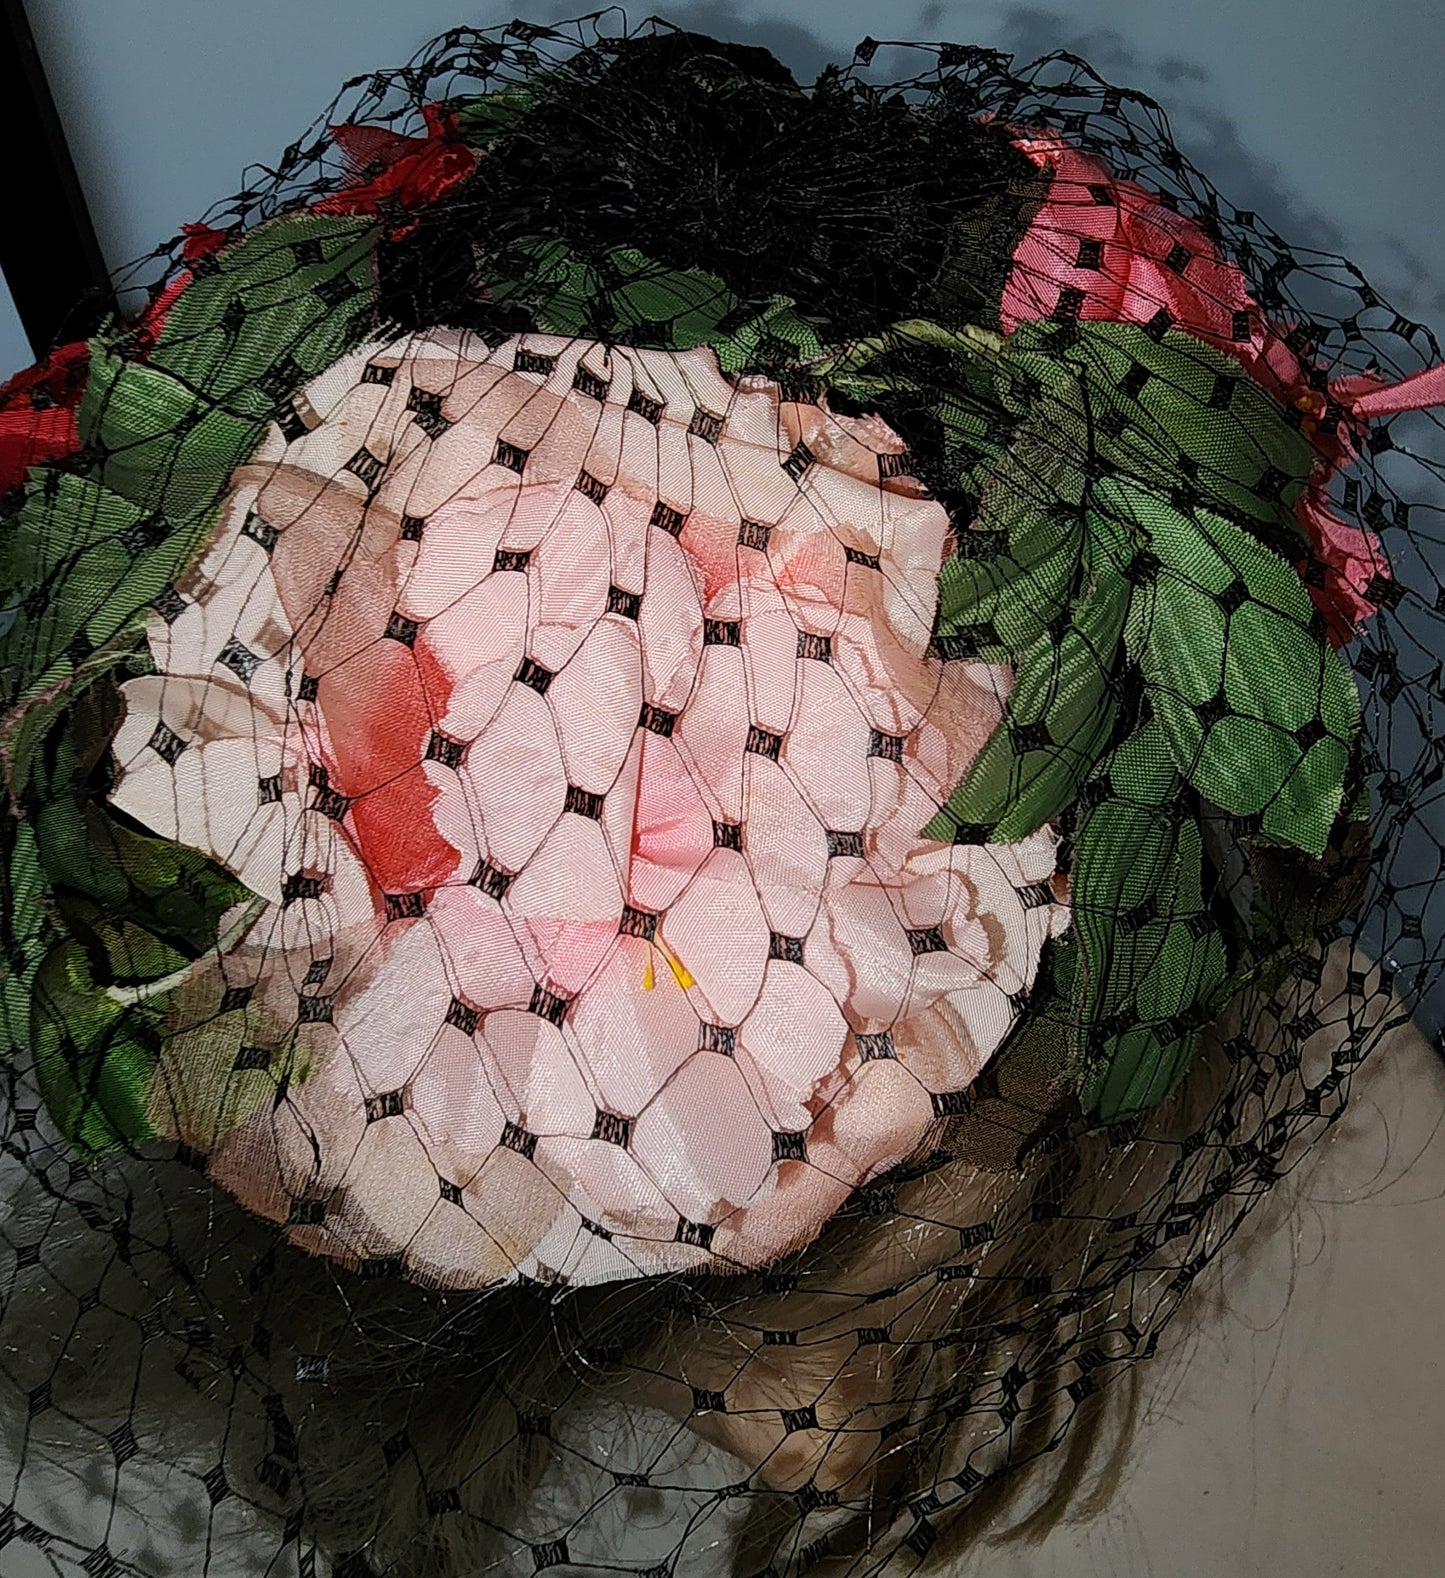 Vintage Floral Fascinator 1950s 60s Large Pink Red Floral Fascinator Hat Black Net Veil Mid Century